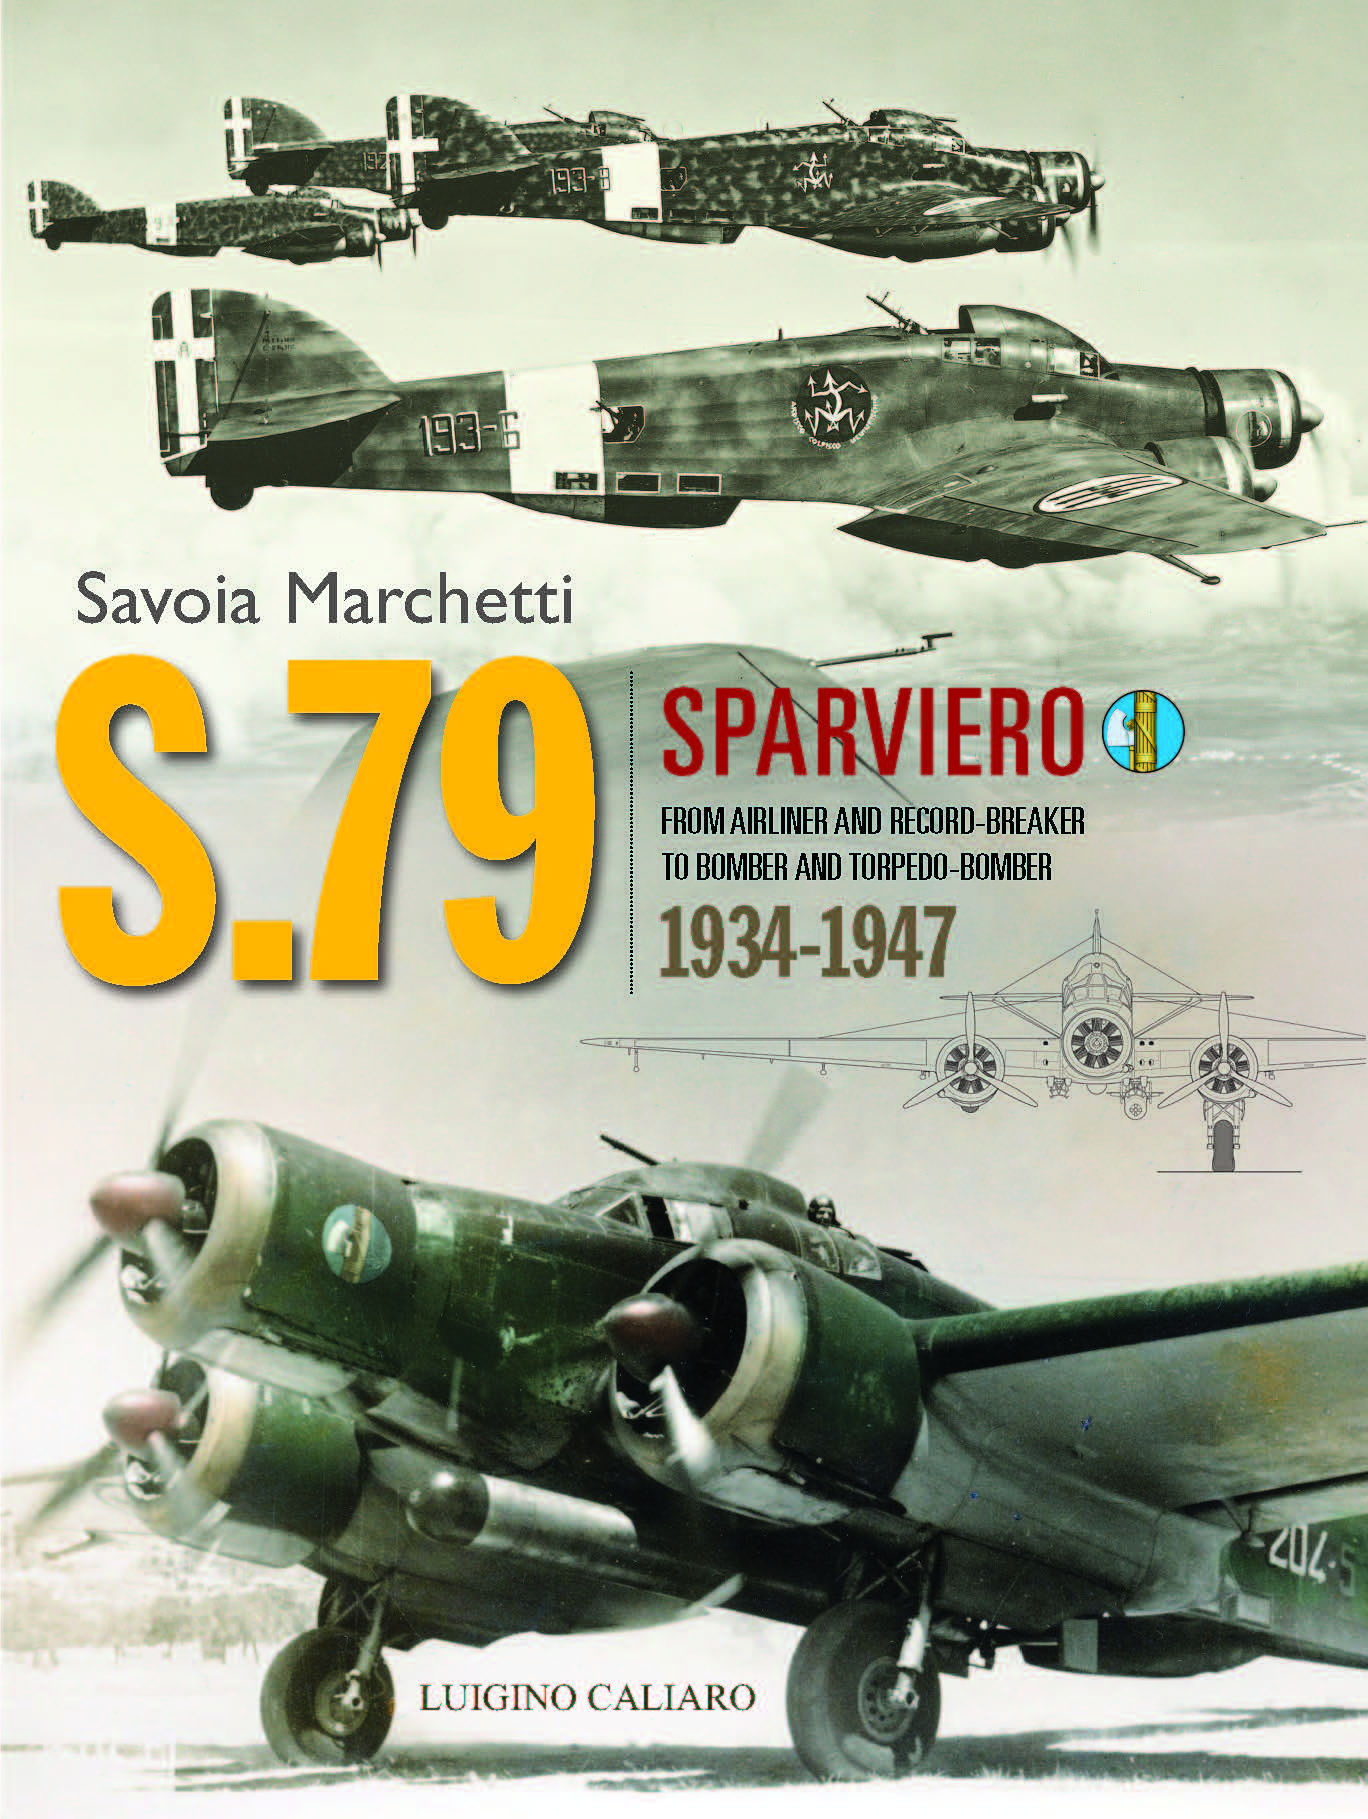 Savoia-Marchetti Sm.79 Wallpapers